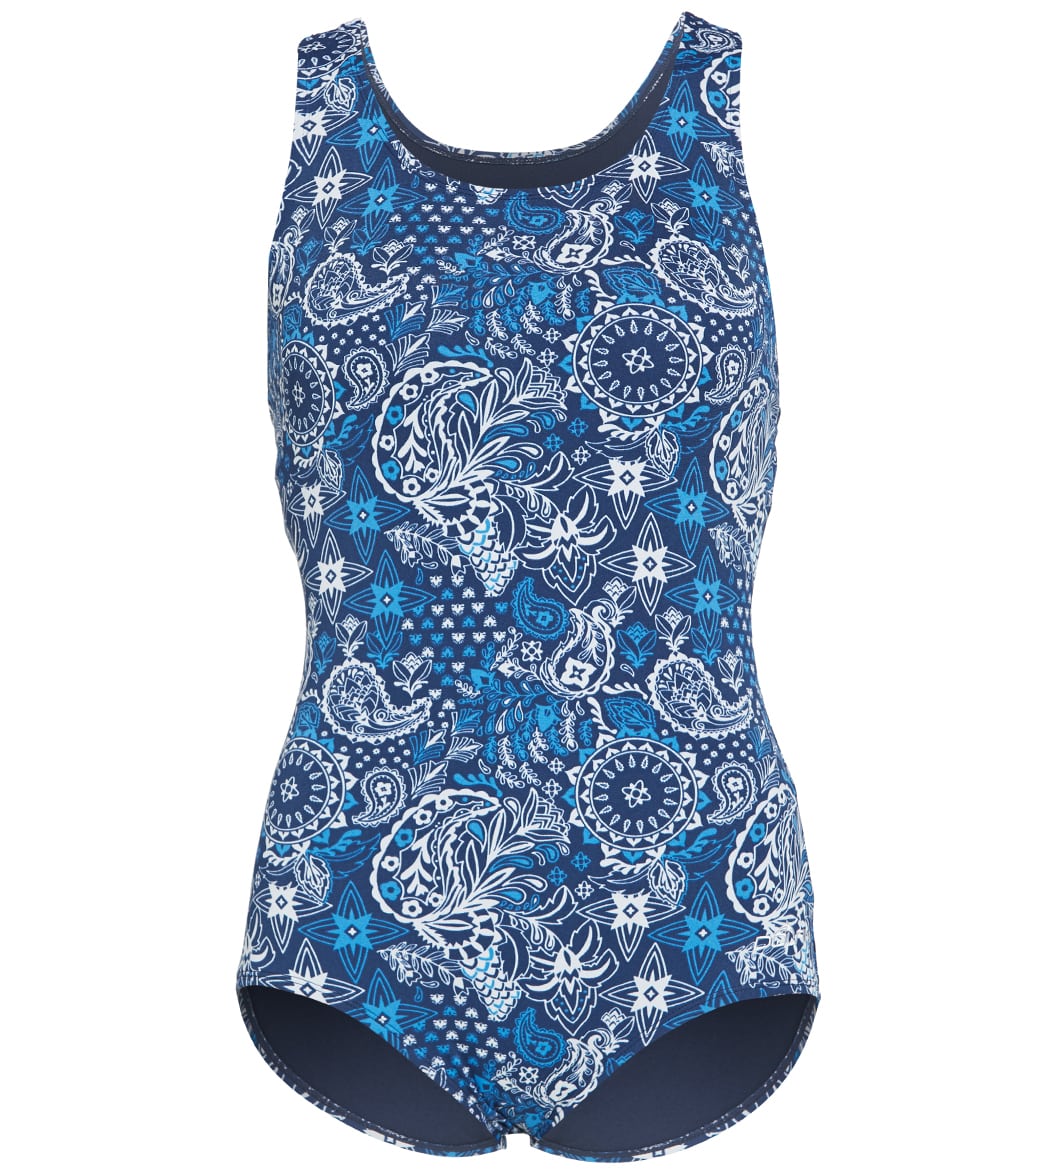 Dolfin Women's Aquashape Santorini Conservative Lap Swimsuit - 6 Polyester - Swimoutlet.com